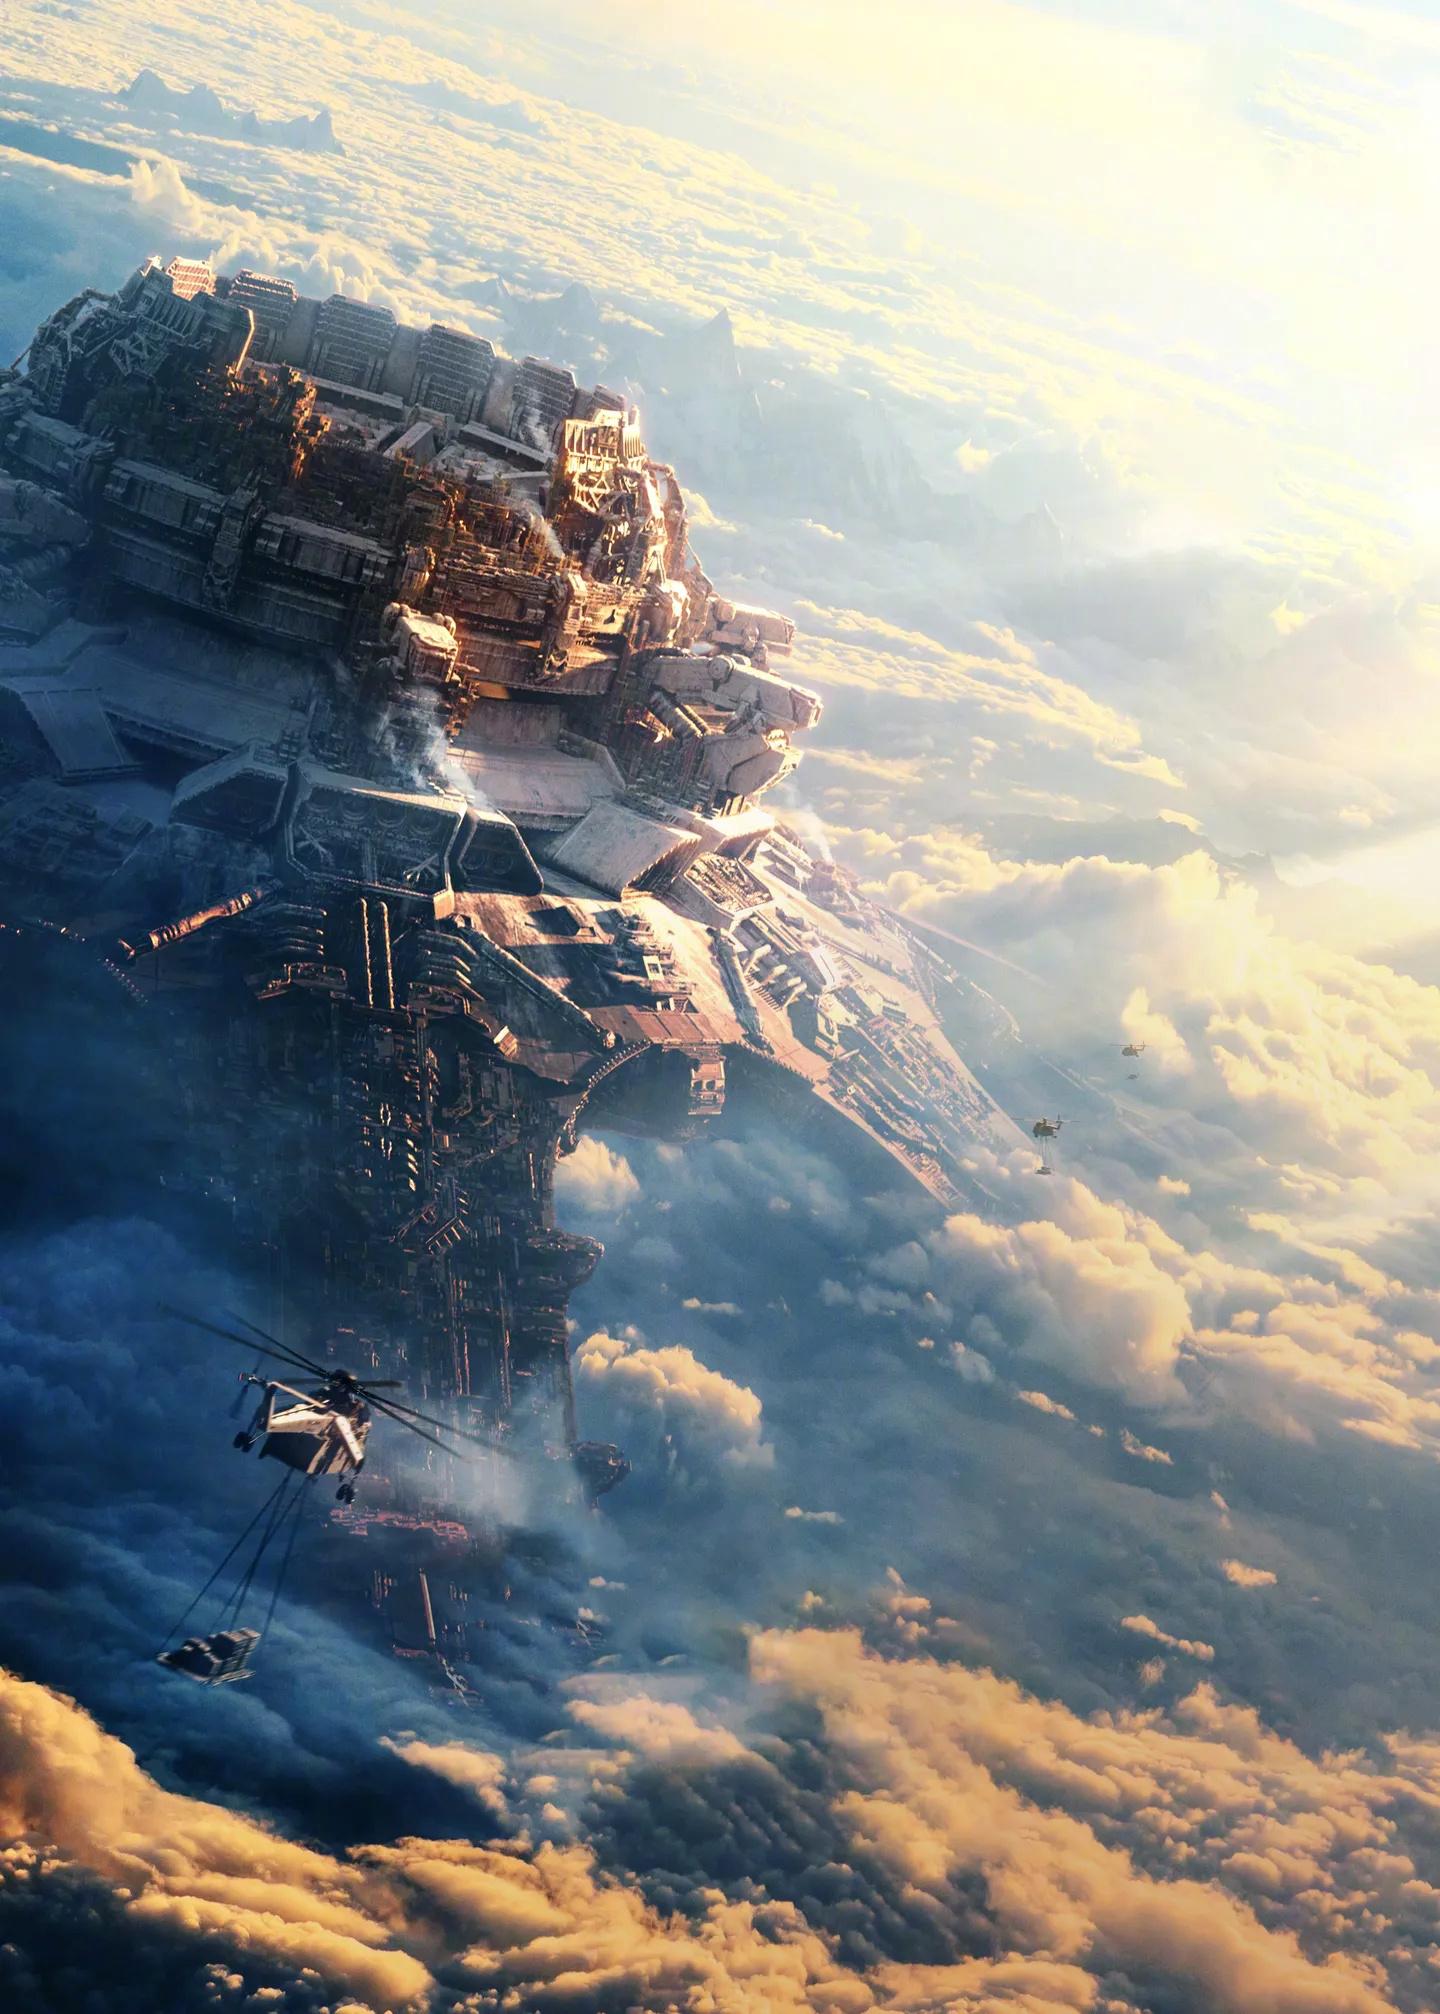 《流浪地球2》纪录片的立项——揭秘科幻纪录影片幕后故事